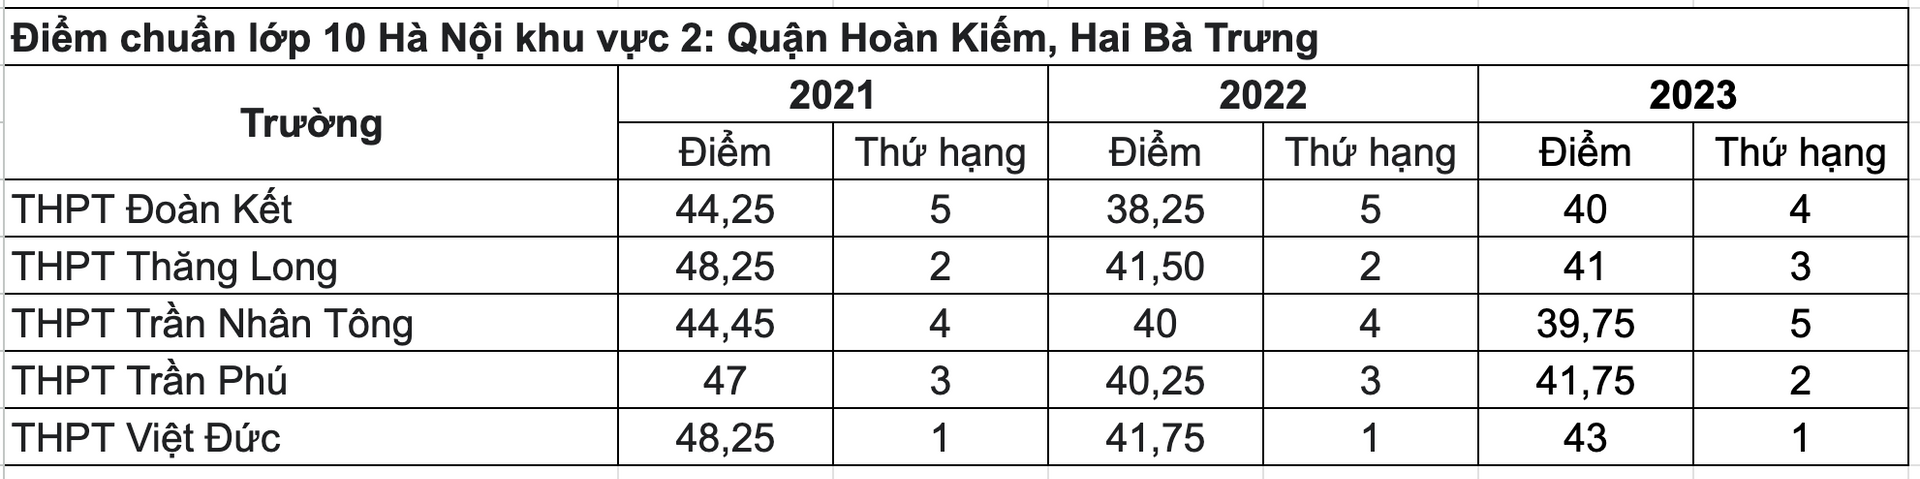 Điểm chuẩn TUYỂN SINH LỚP 10 các trường của Hà Nội 3 năm gần đây- Ảnh 3.